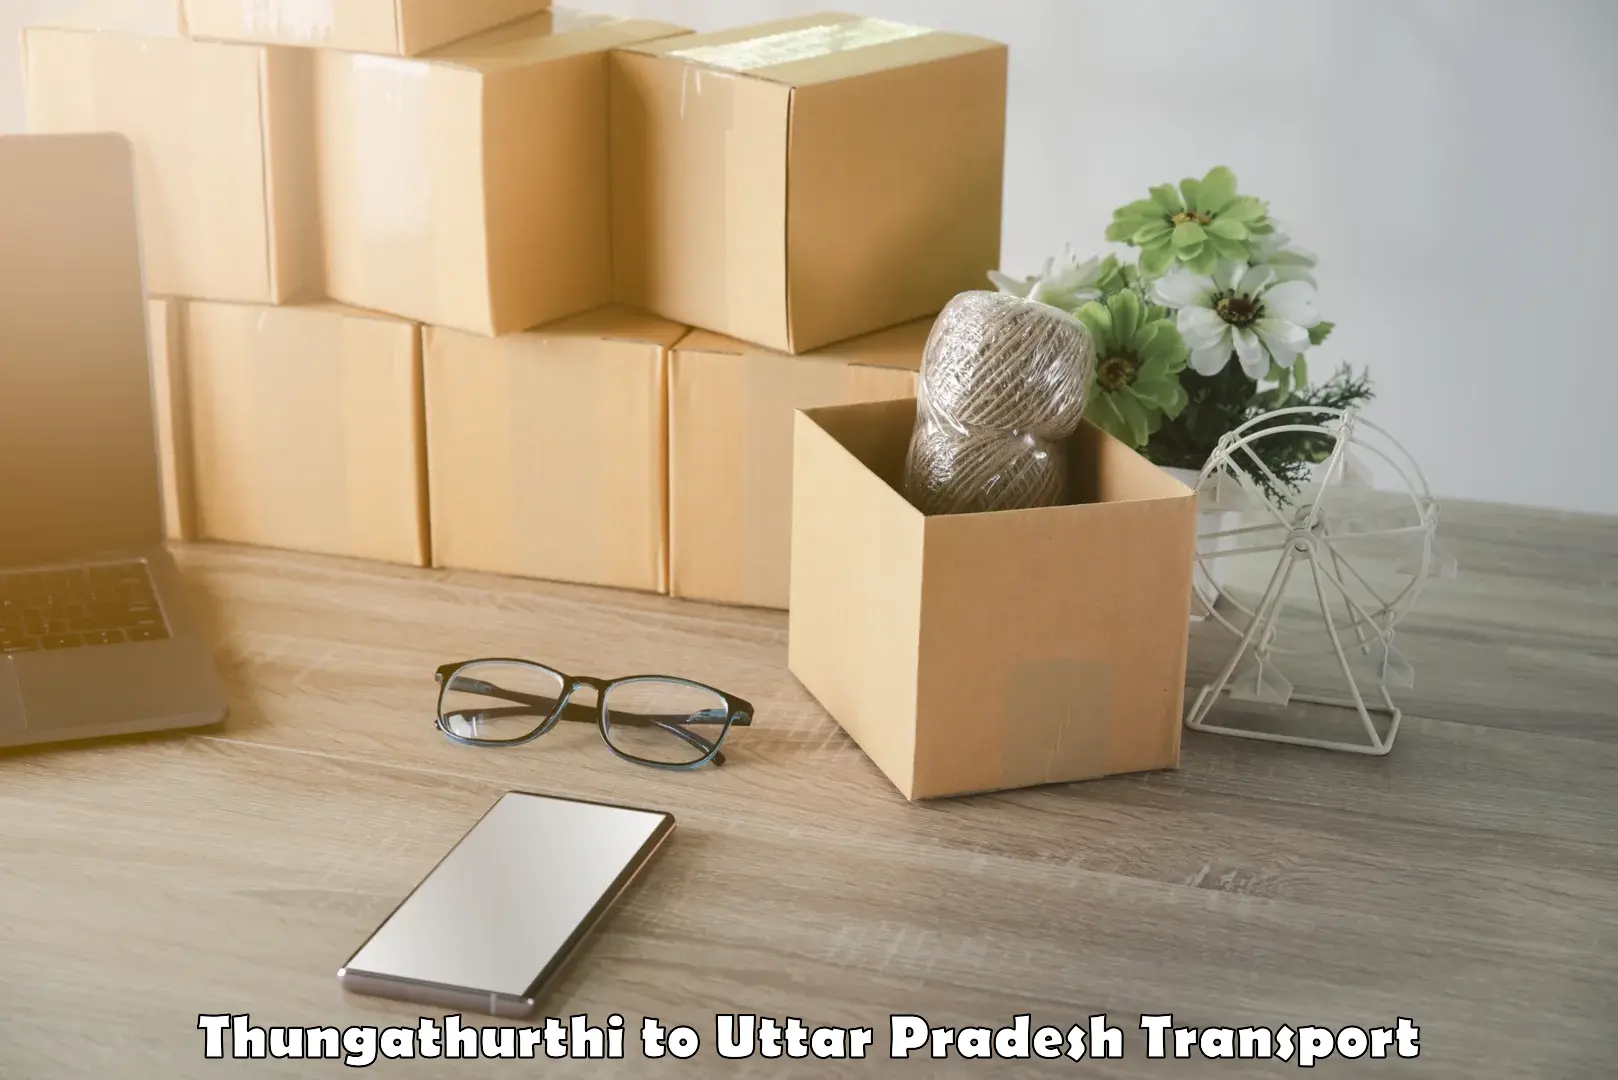 Online transport Thungathurthi to Behat